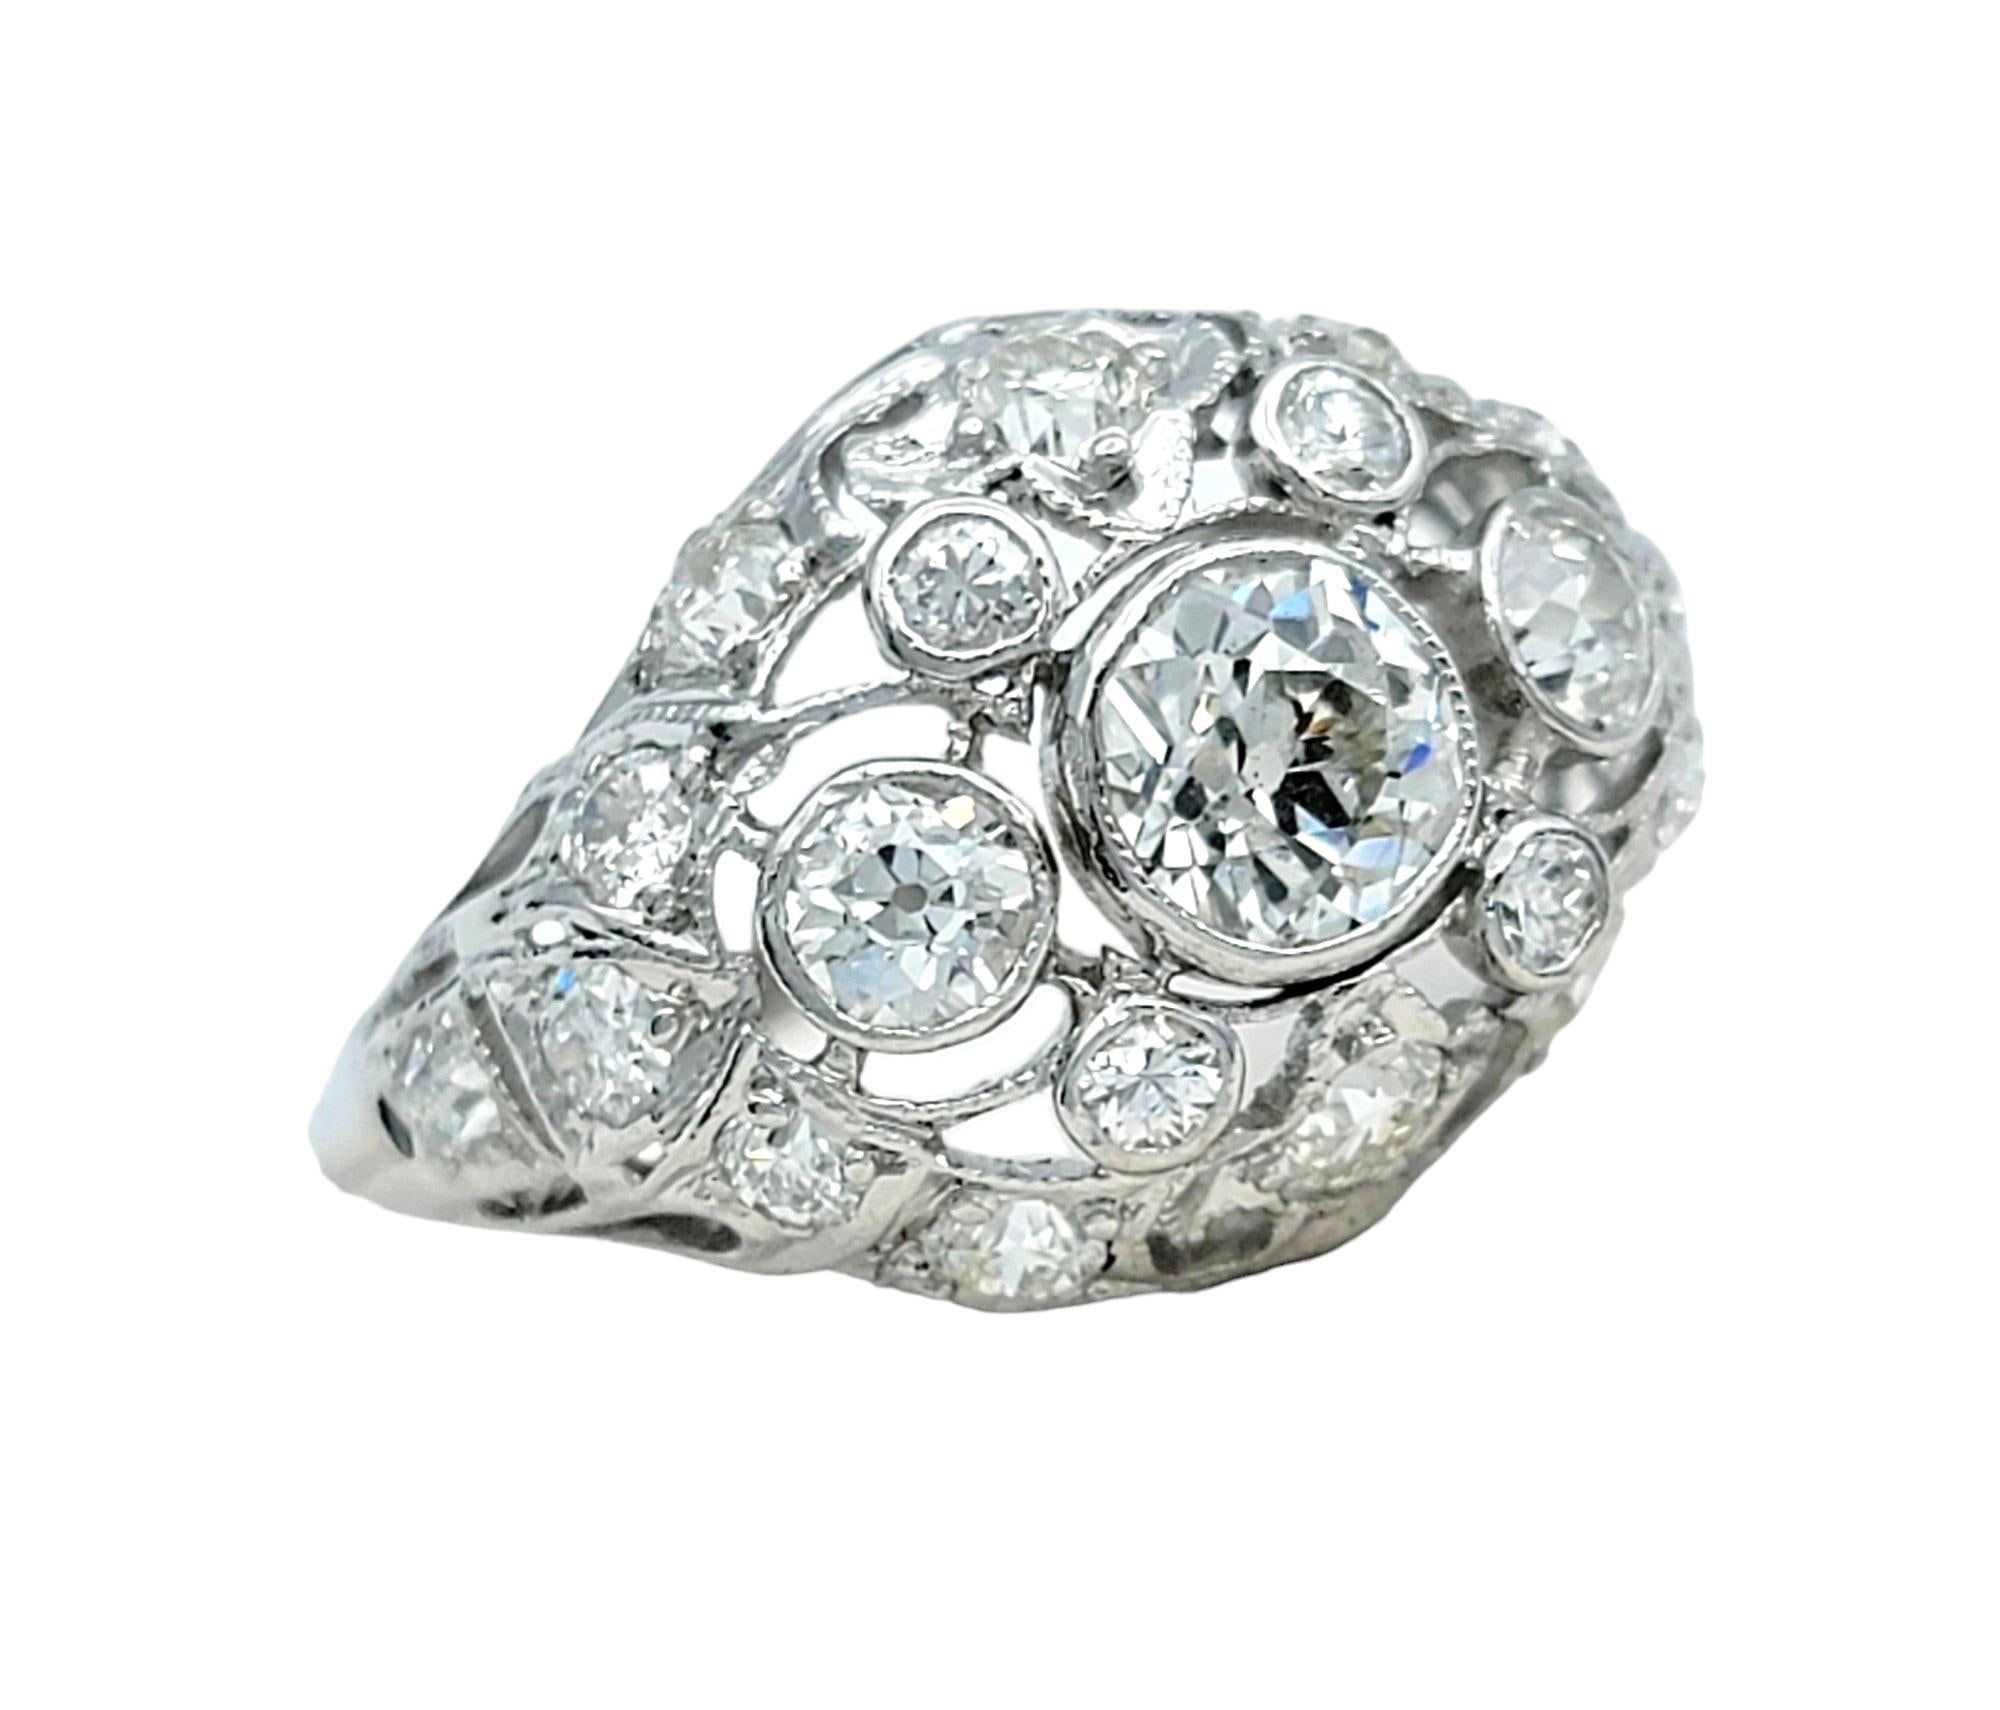 Ringgröße: 5

Dieser atemberaubende Vintage-Diamant-Cluster-Kuppelring, elegant gefasst in schimmerndes 14-karätiges Weißgold, ist ein zeitloses Zeugnis von Raffinesse und Stil. Das unverwechselbare, kuppelförmige Design zeichnet sich durch eine